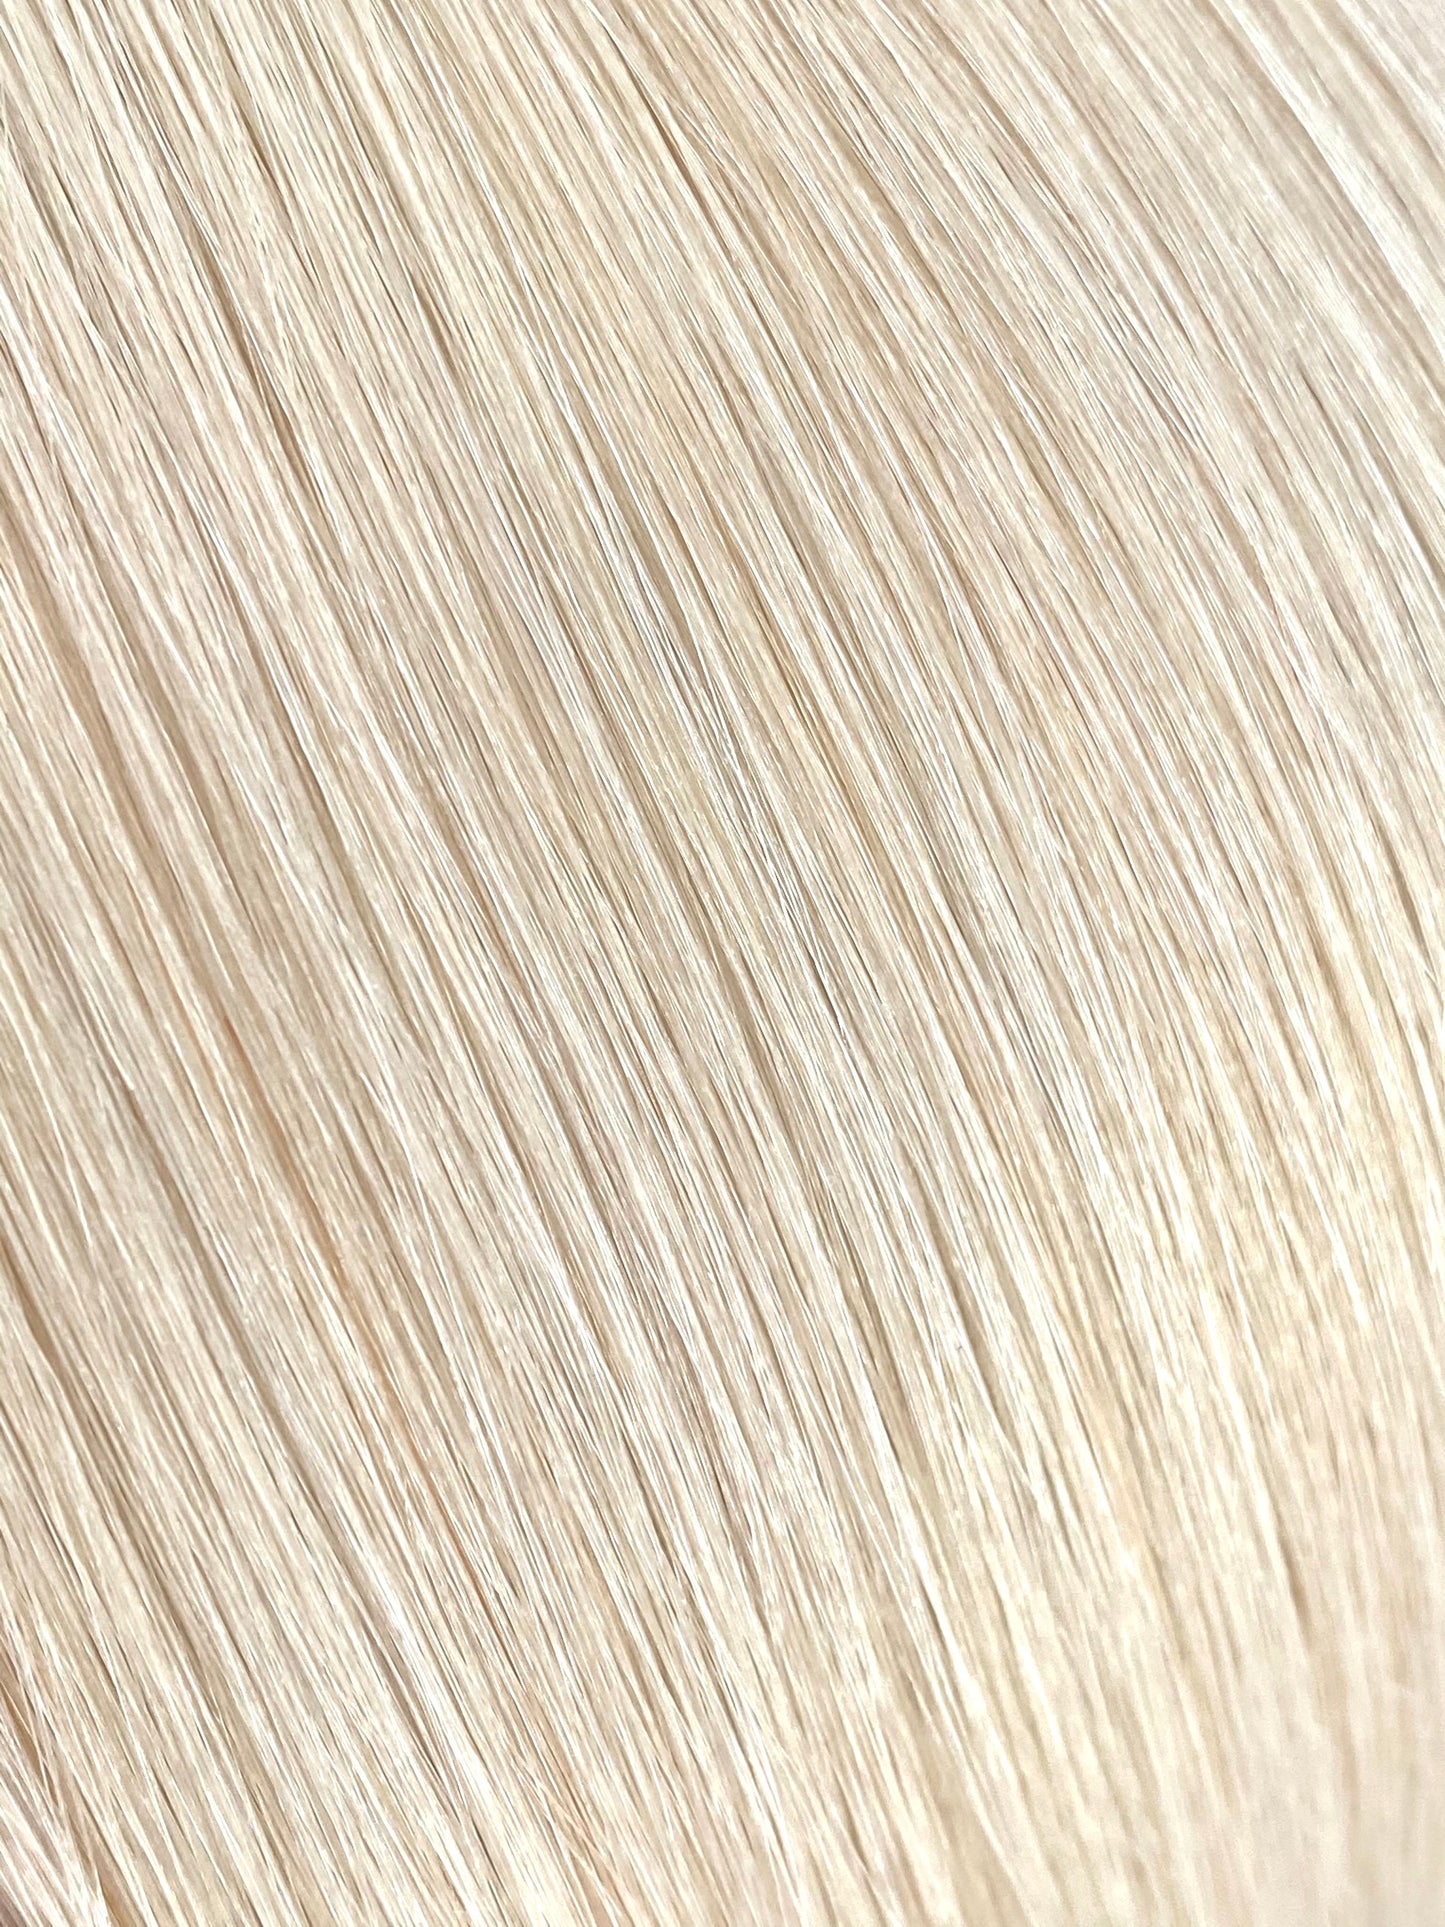 weft hair-601 purest blonde 20 inch